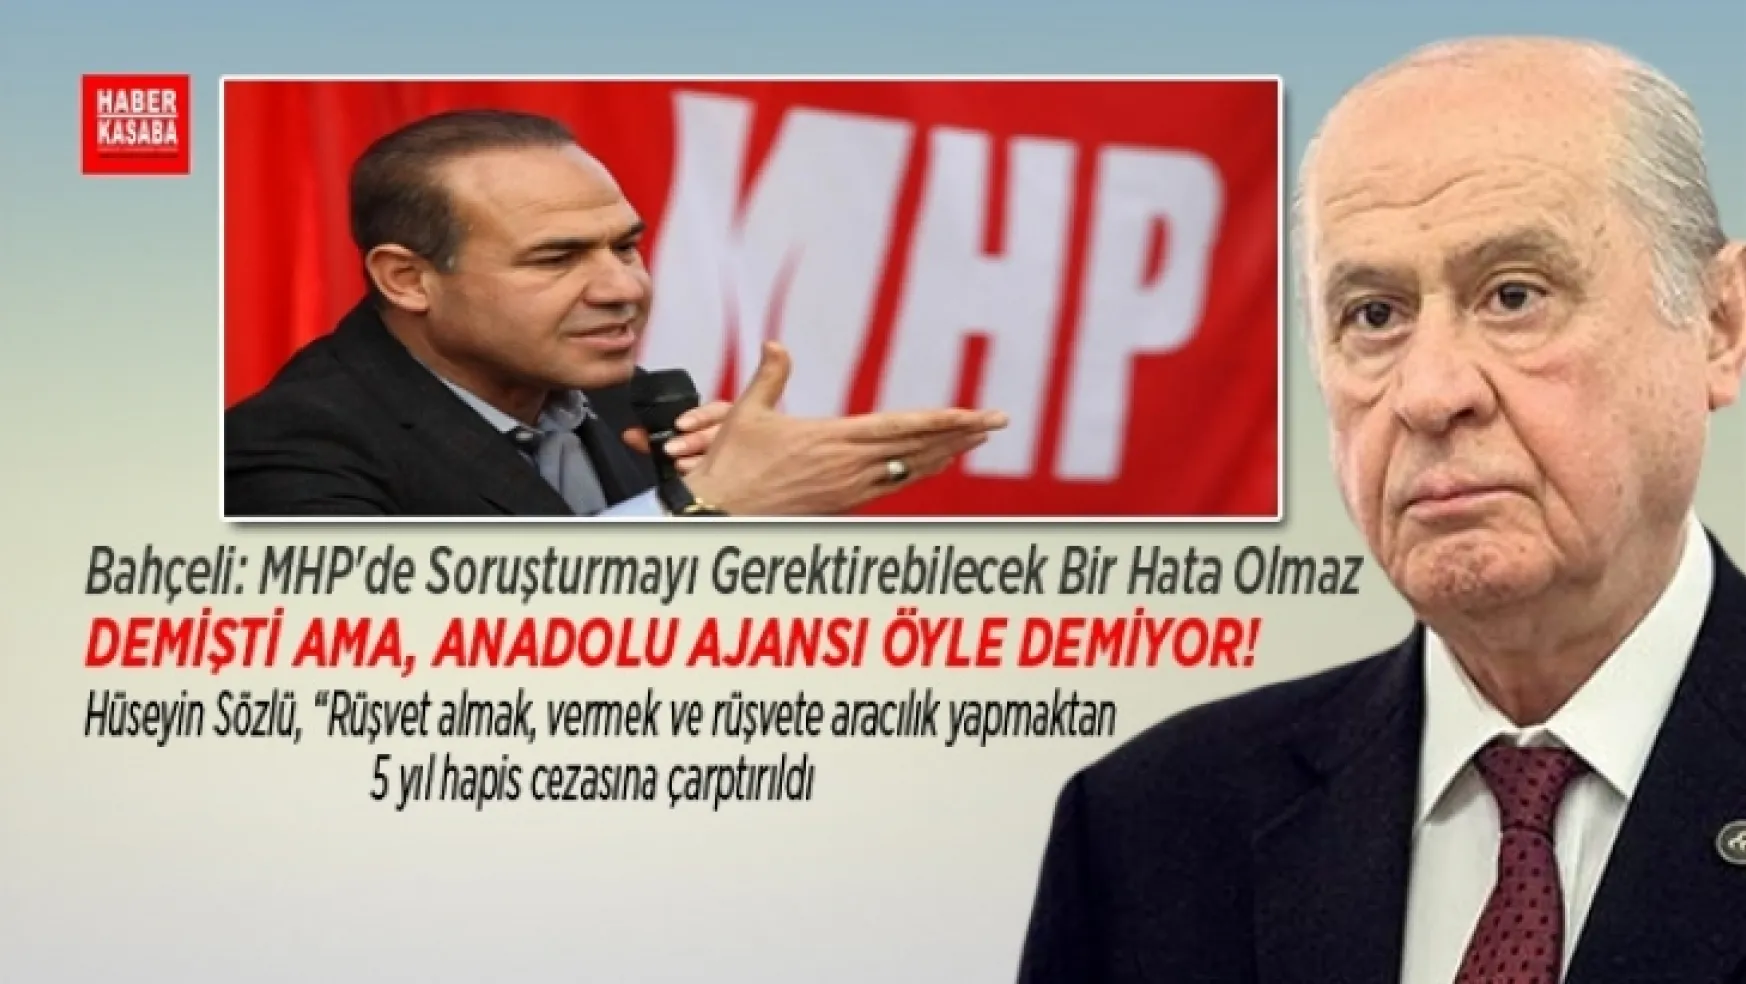 Bahçeli,'MHP'de Soruşturmayı Gerektirebilecek Bir Hata Olmaz' dedi ama